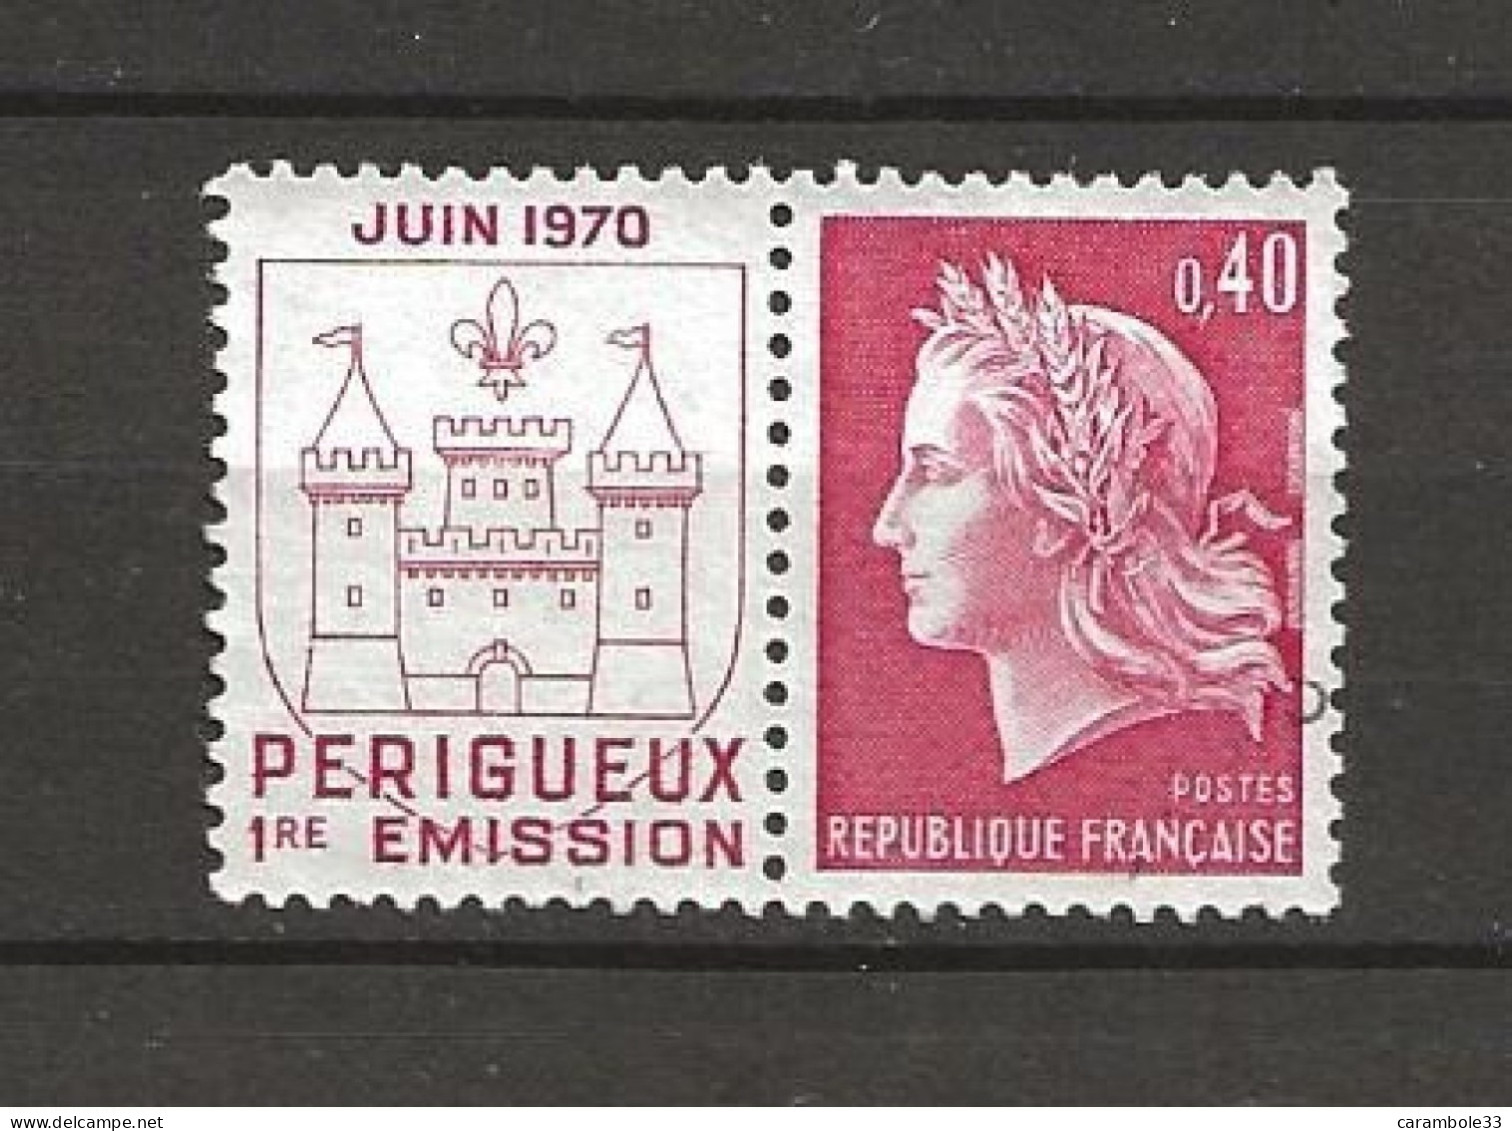 TIMBRE  FRANCE  Timbre JUIN 1970 PERIGUEUX  1° EMISSION  0,40  Cbliteré(1564) - Used Stamps